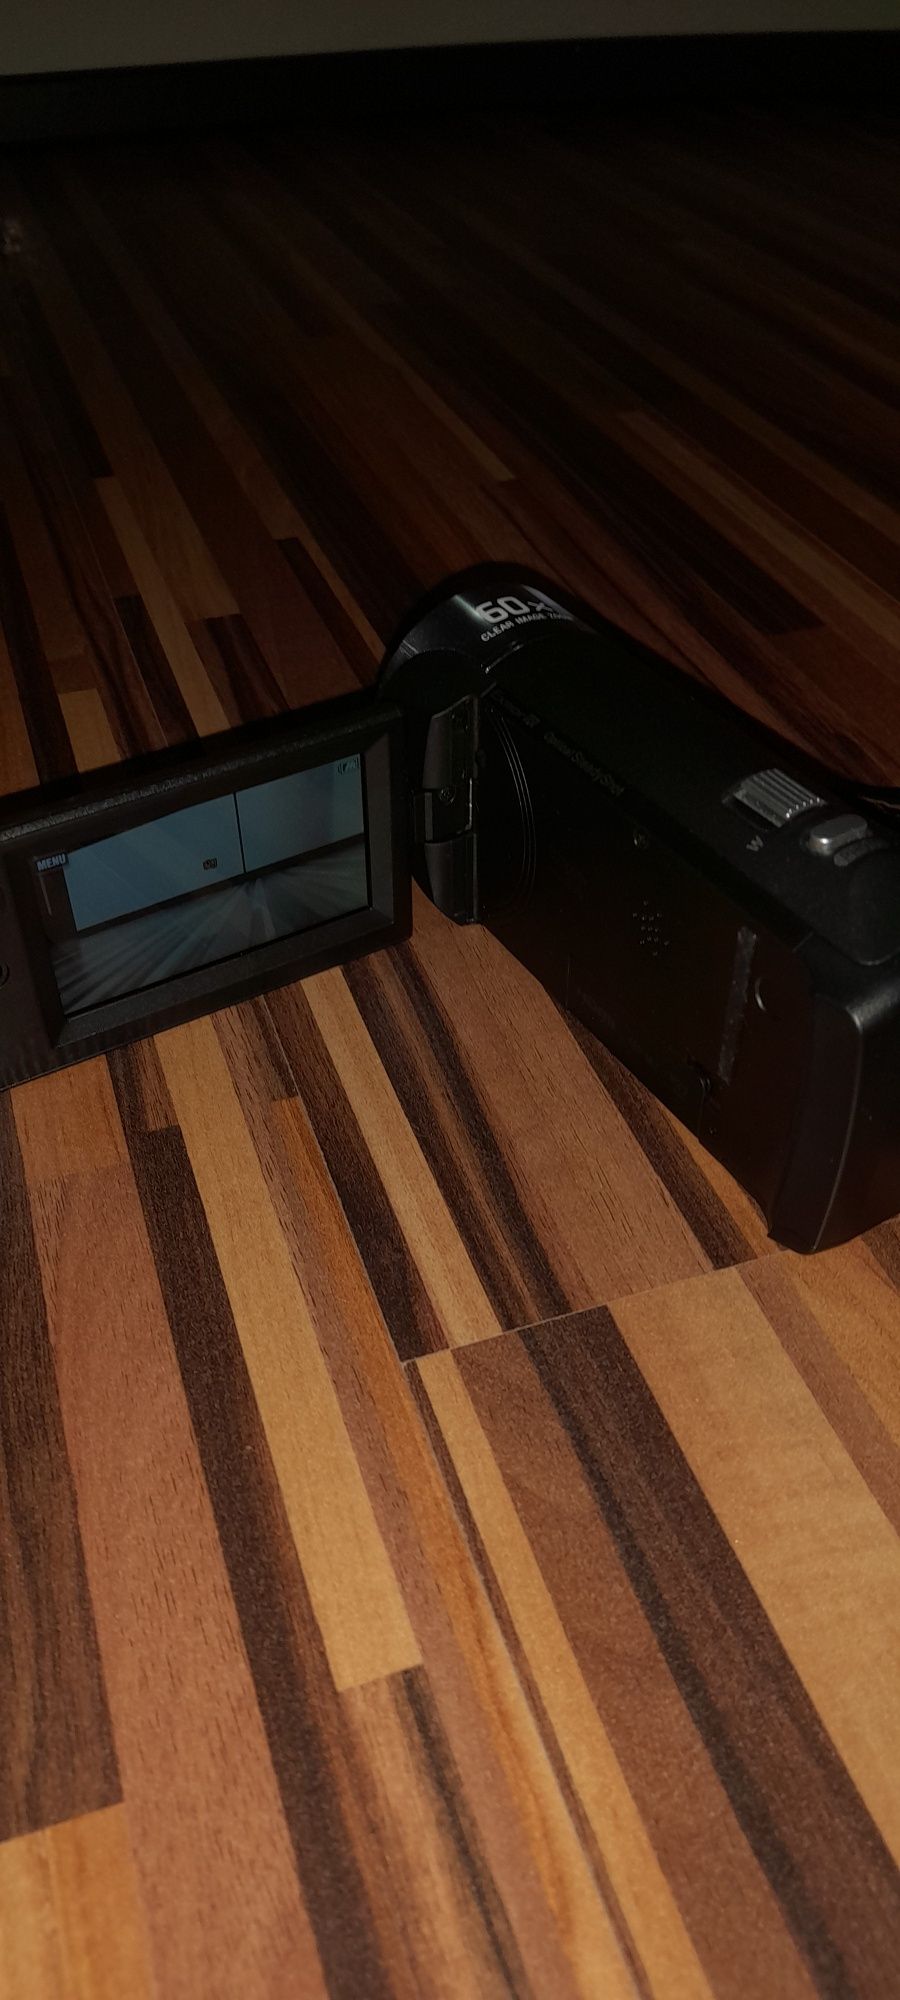 Camera video Sony Handycam  HDR-CX240E, Full HD, Negru